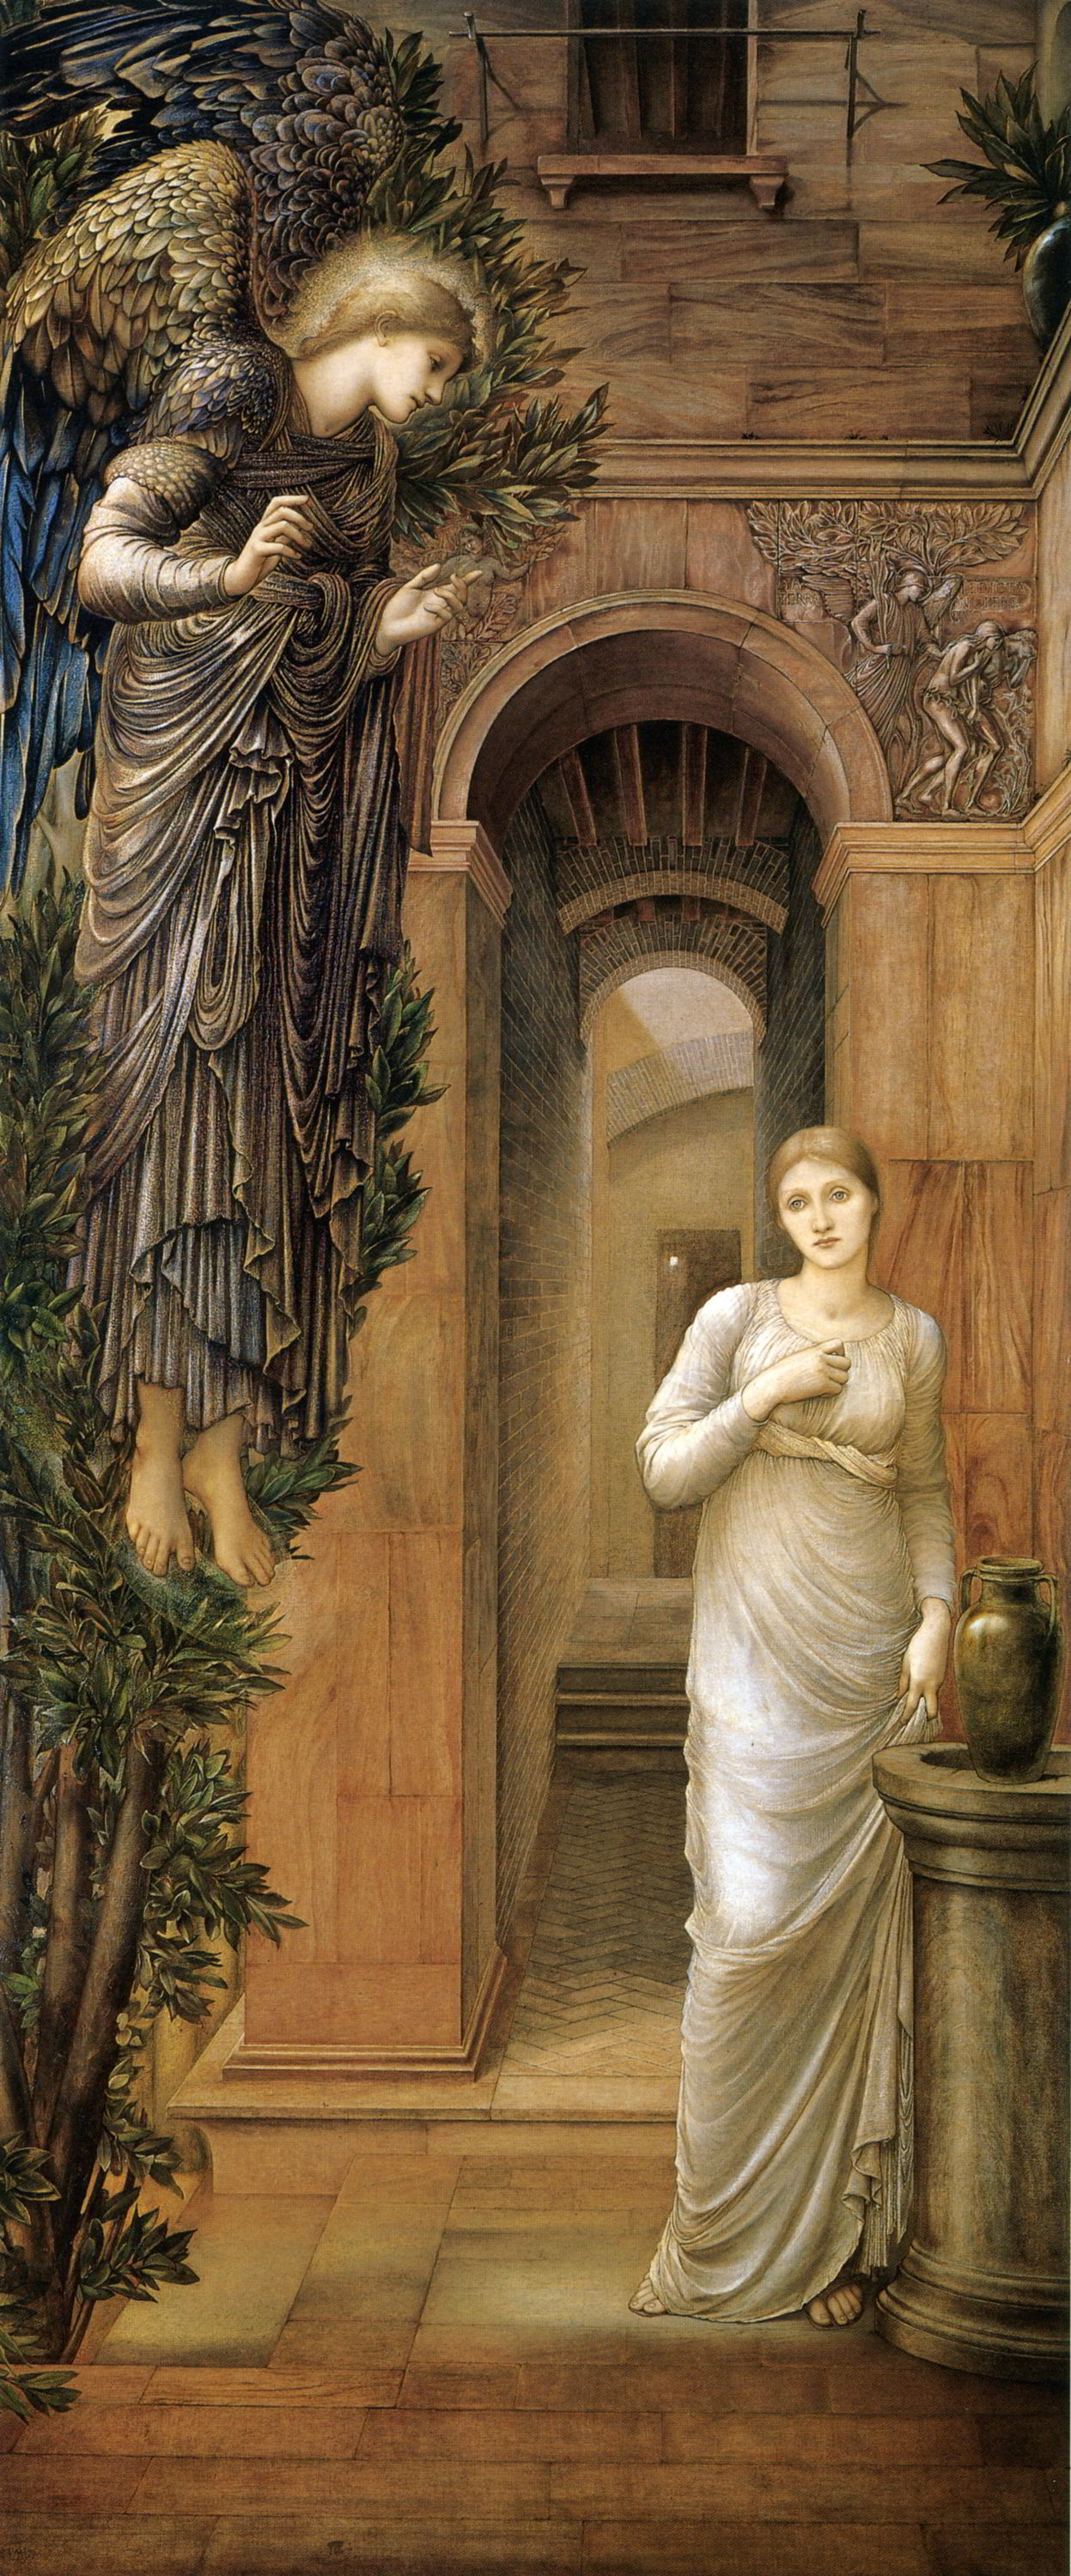 The Annunciation by Edward Burne-Jones